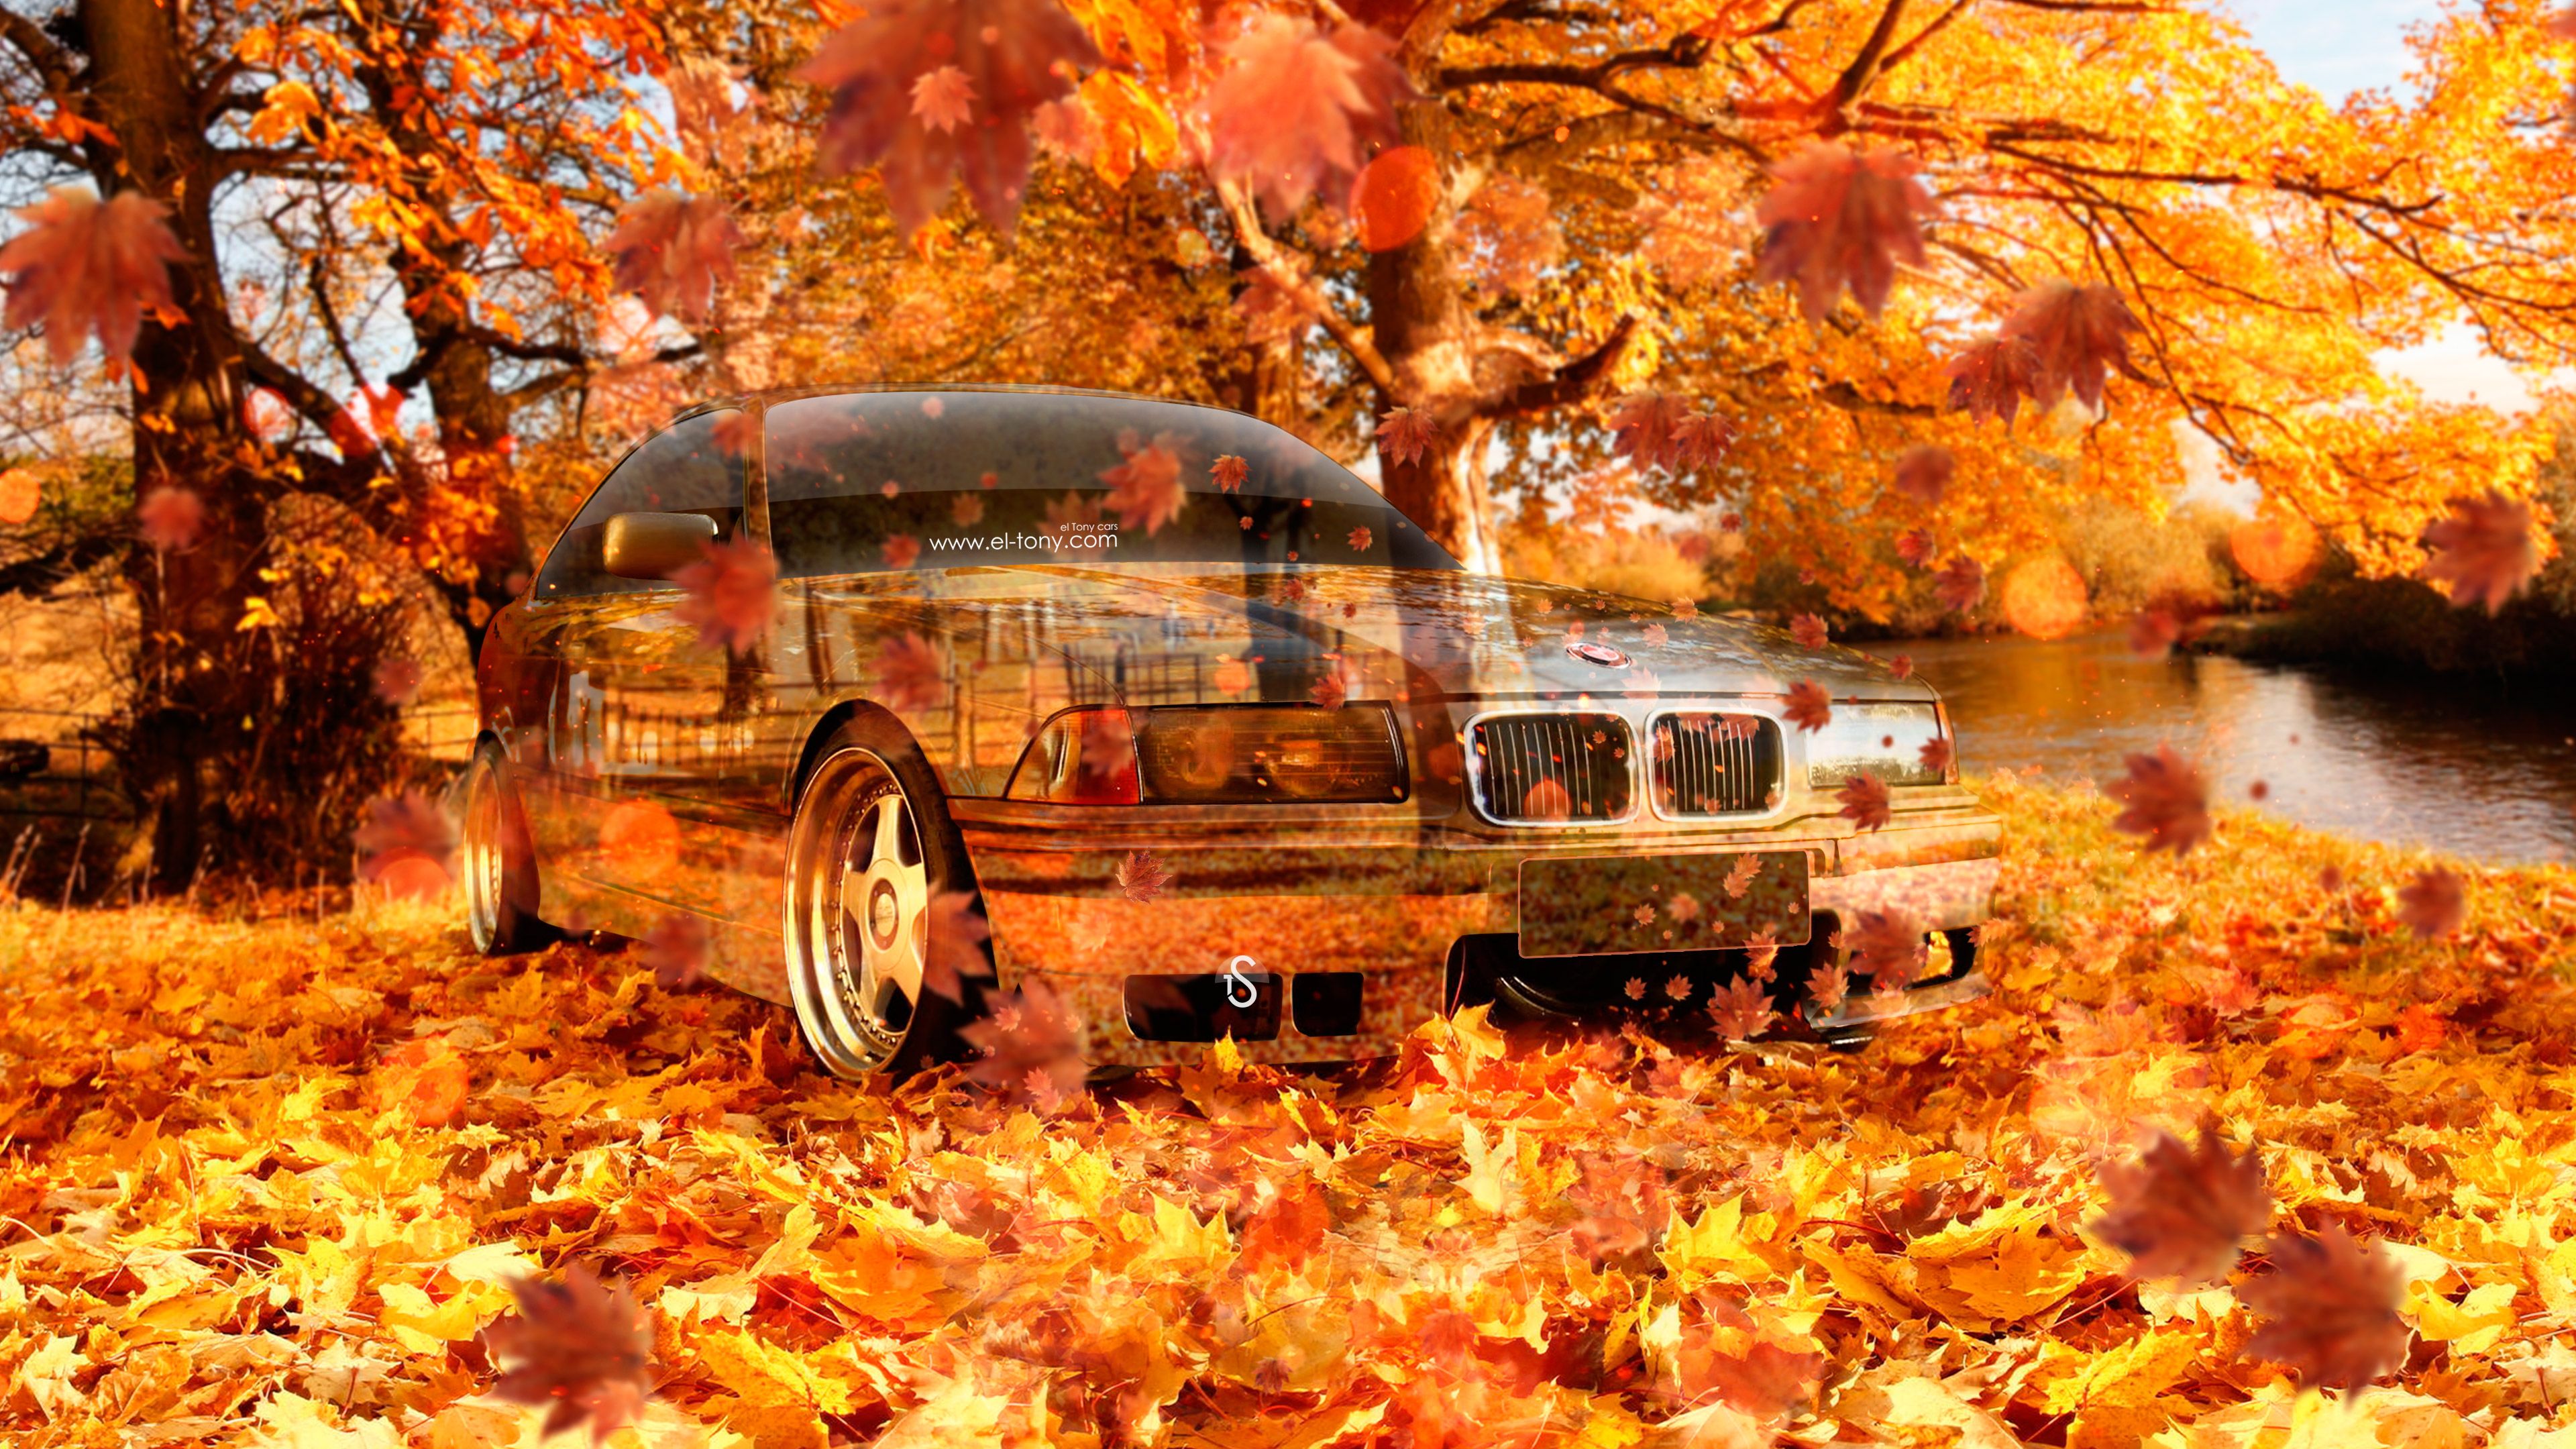 BMW Crystal Nature Autumn Car 2016 Wallpaper 4K el Tony